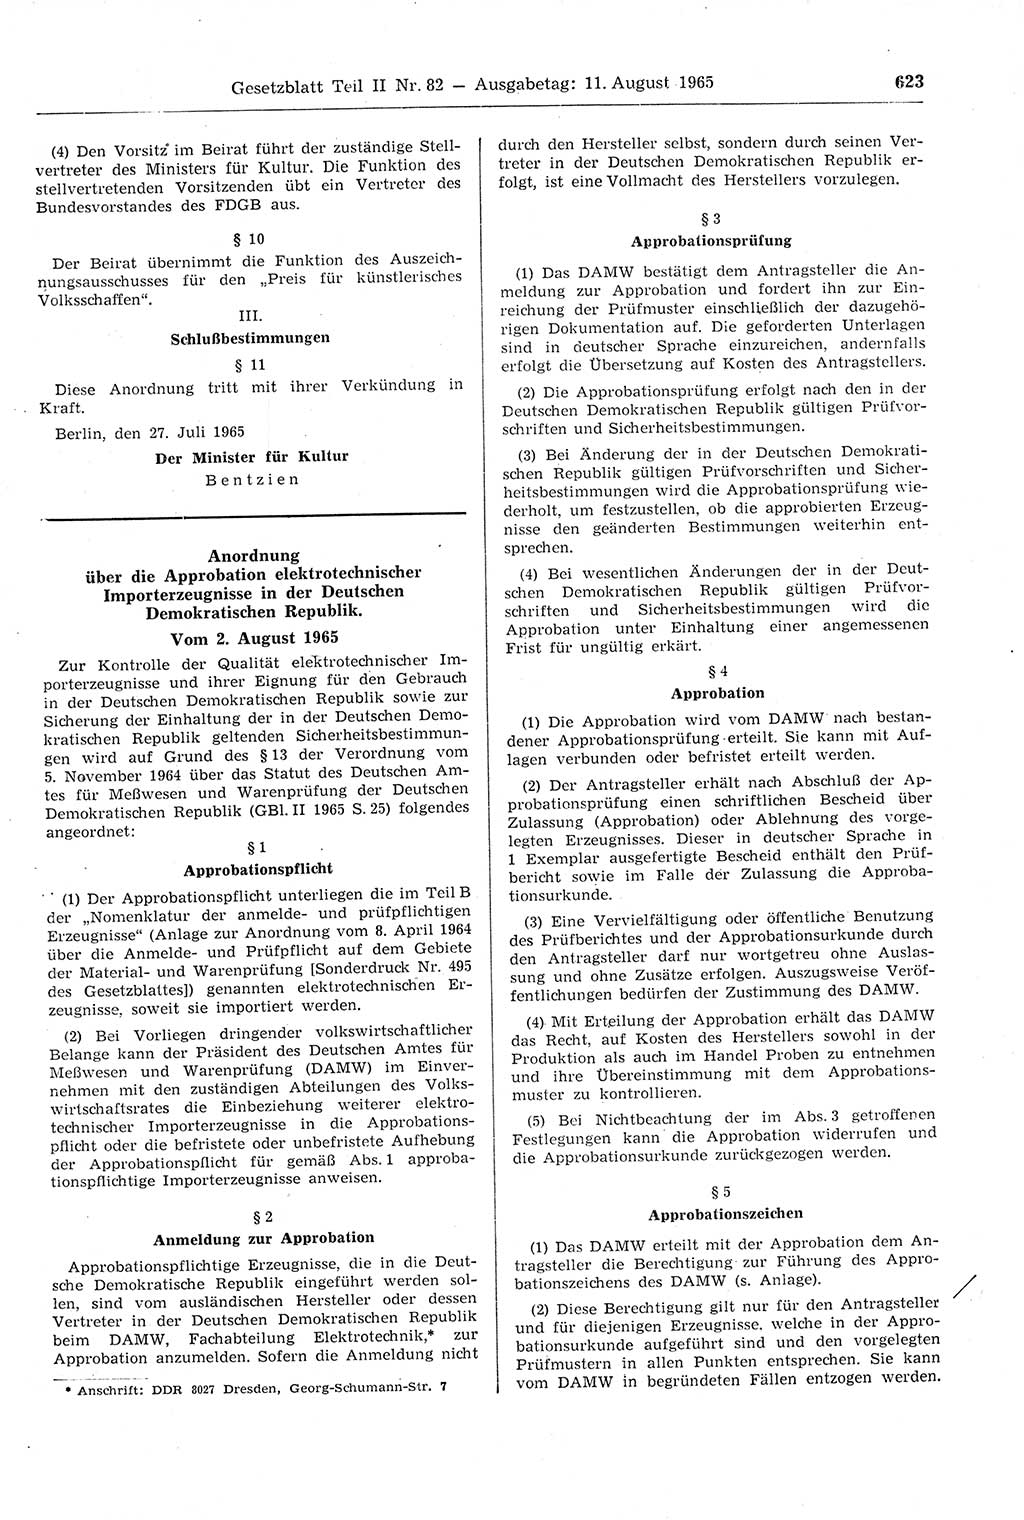 Gesetzblatt (GBl.) der Deutschen Demokratischen Republik (DDR) Teil ⅠⅠ 1965, Seite 623 (GBl. DDR ⅠⅠ 1965, S. 623)